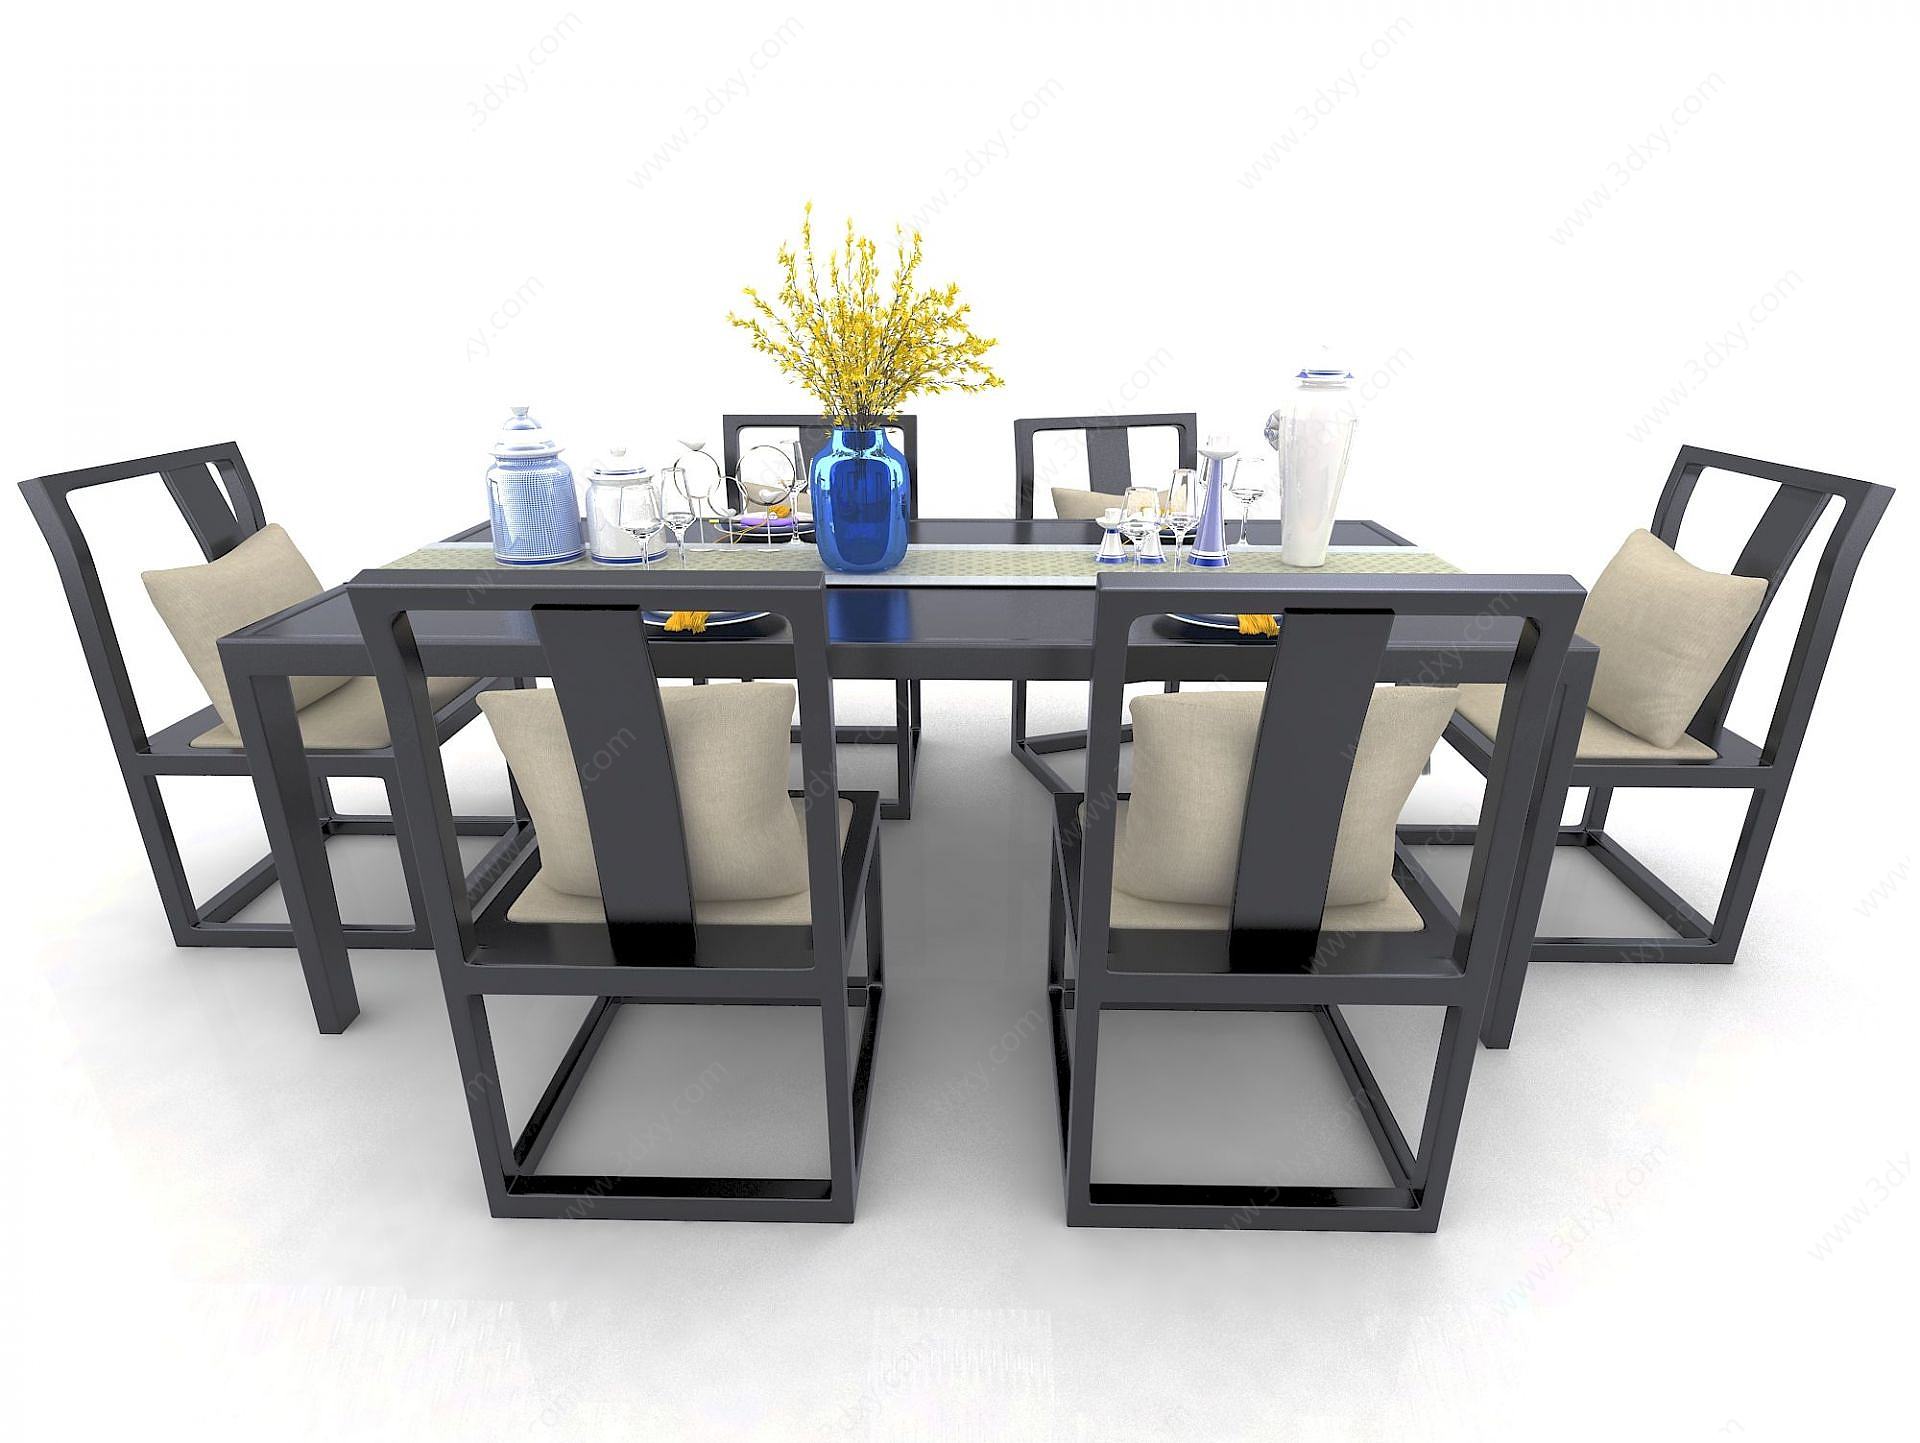 中式风格桌椅3D模型